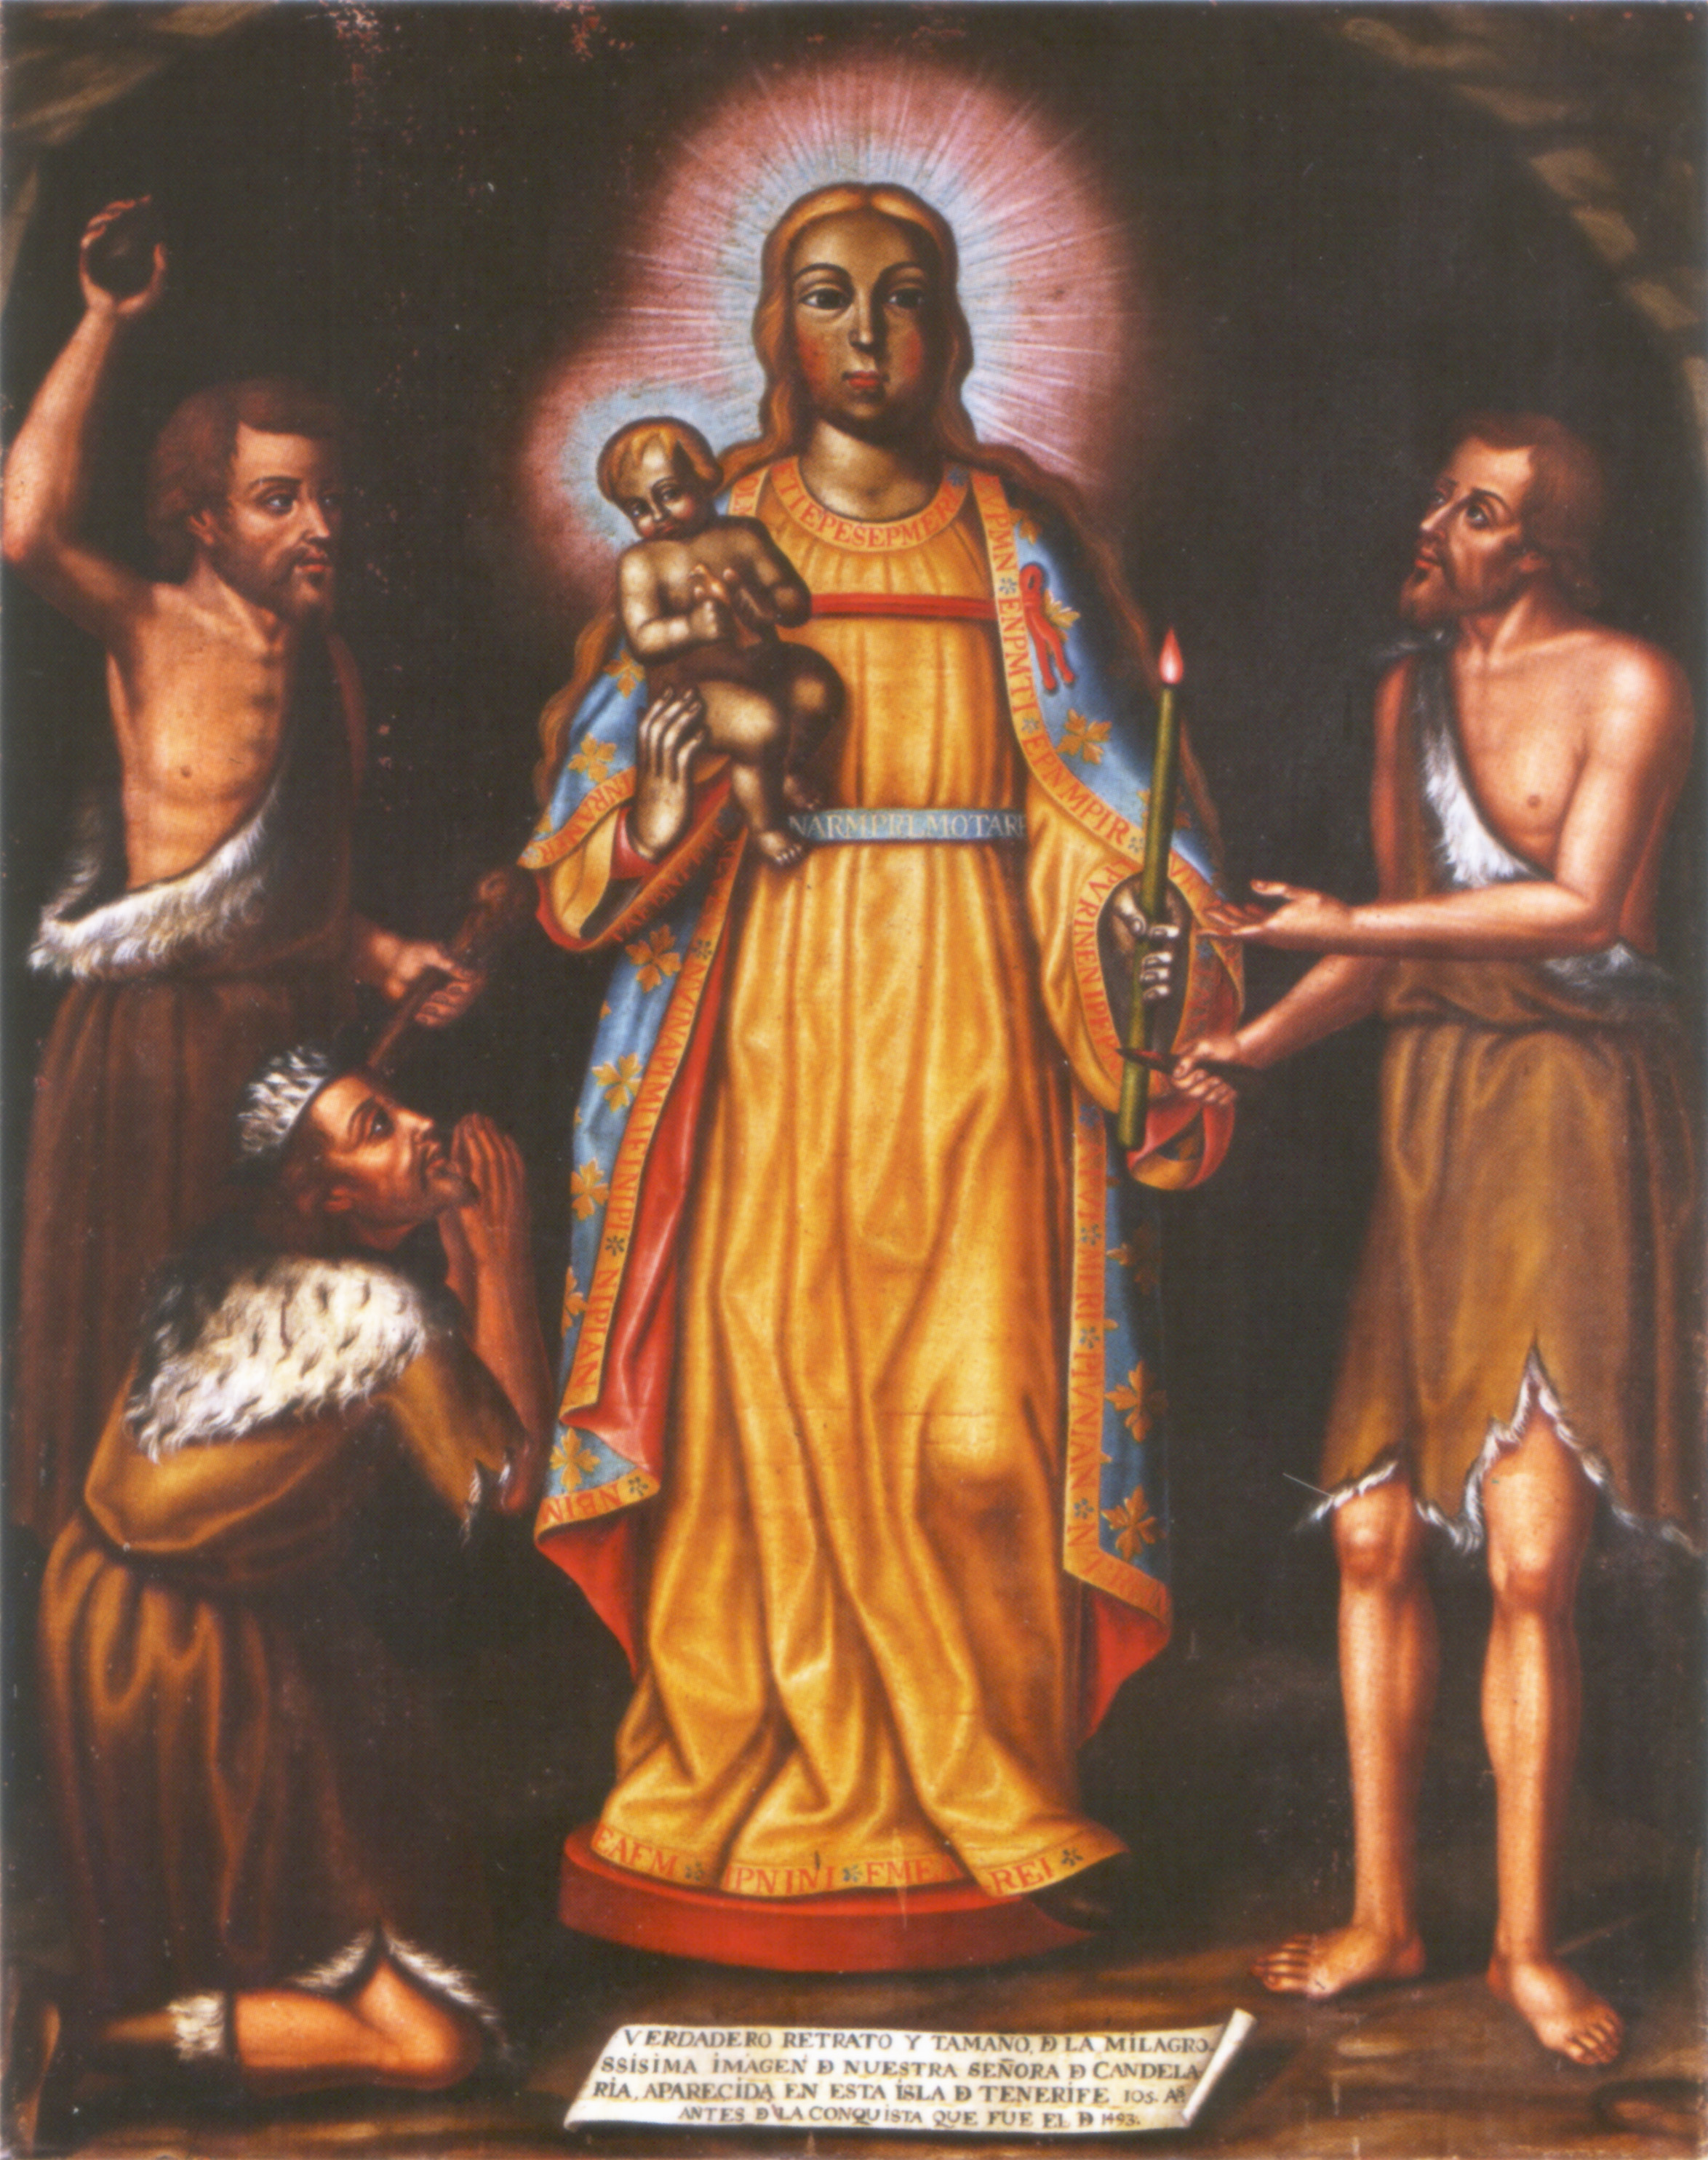 Virgen de la Candelaria de Islas Canarias, presidió la Colonización de América, España (2 feb, 15 ago)